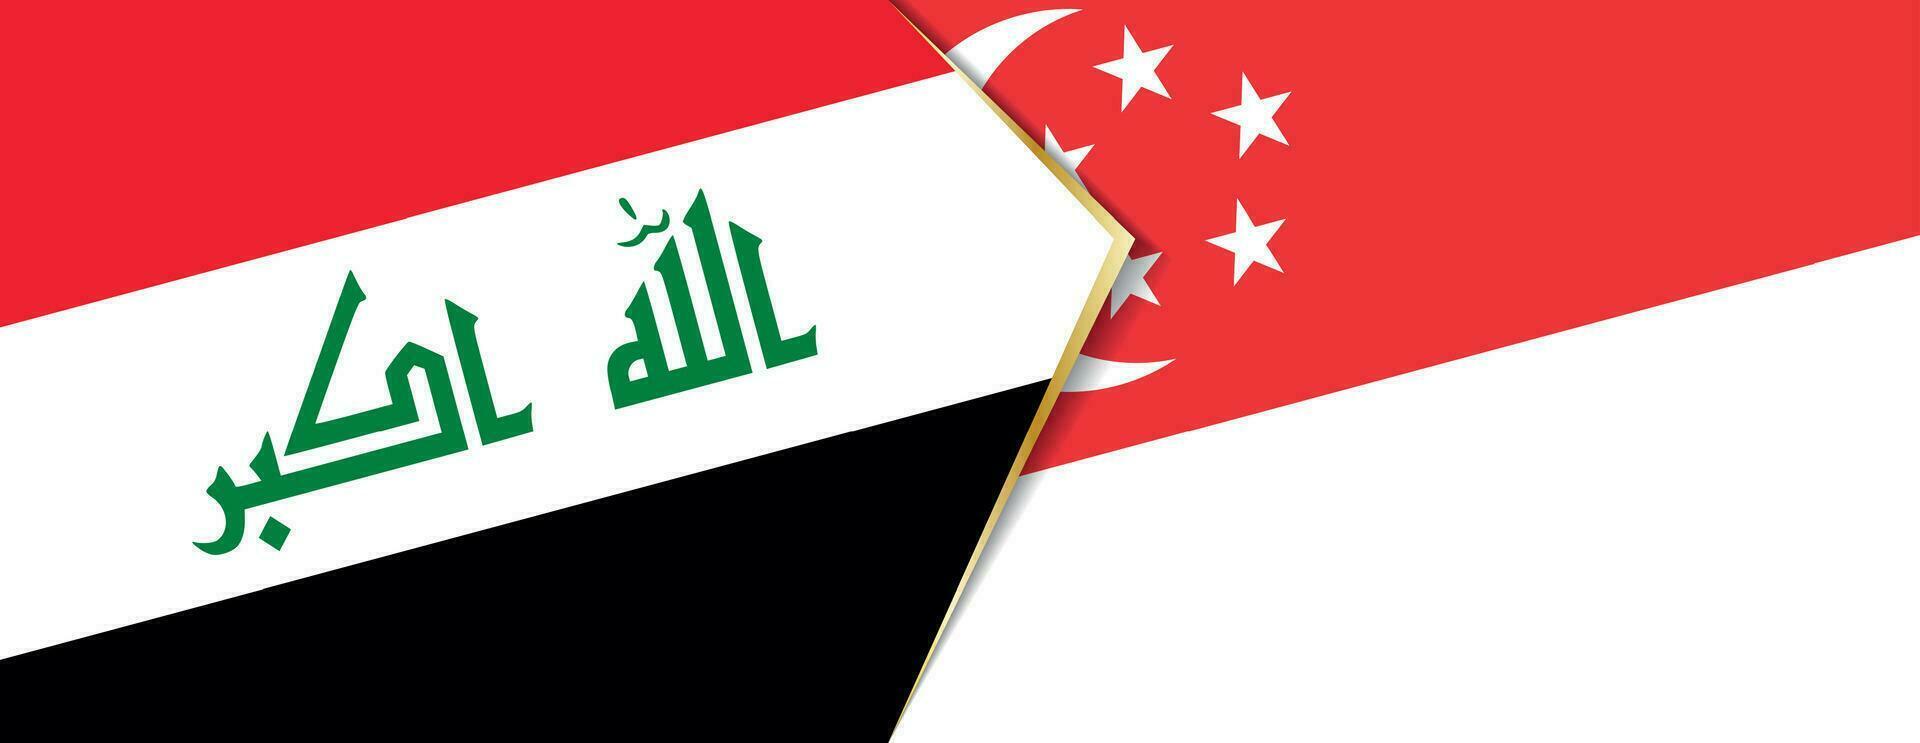 Iraque e Cingapura bandeiras, dois vetor bandeiras.